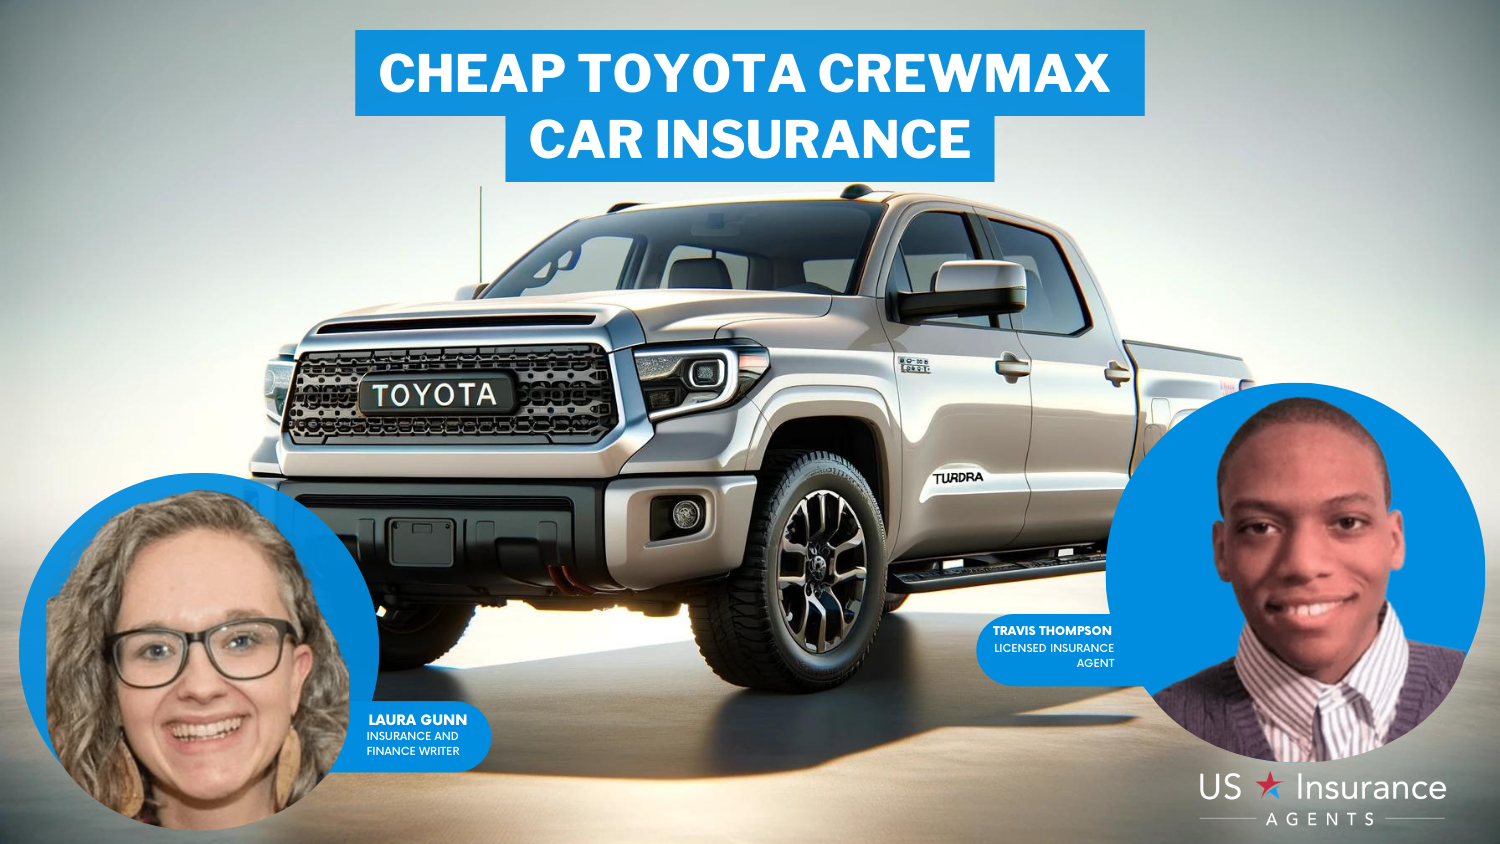 Cheap Toyota Tundra CrewMax Car Insurance: State Farm, Progressive, and Allstate